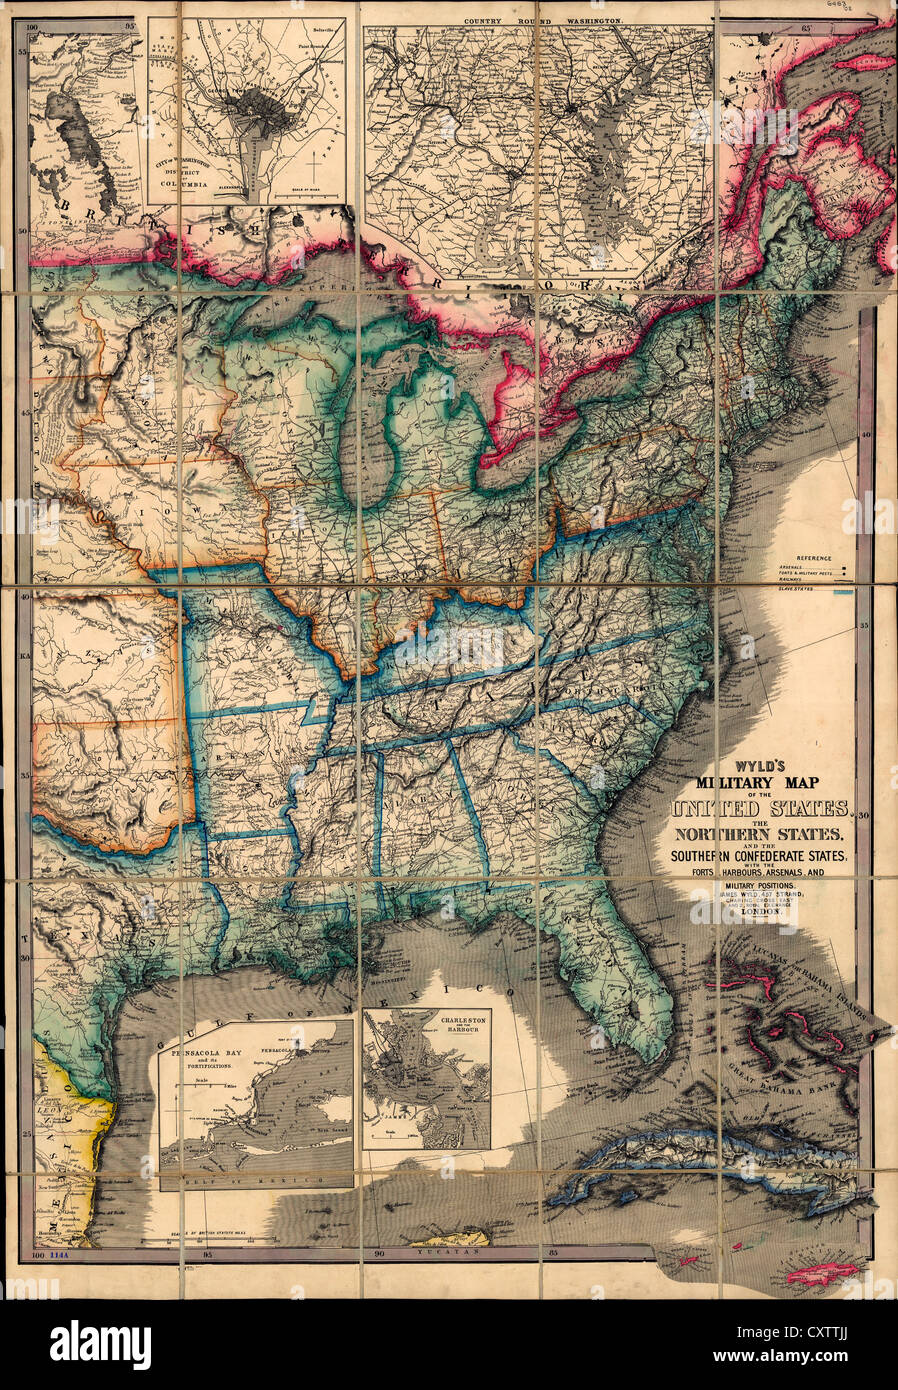 Il Wyld mappa militare degli Stati Uniti, con i forti, porti, gli arsenali, e posizioni militari. 1861 USA la guerra civile Foto Stock